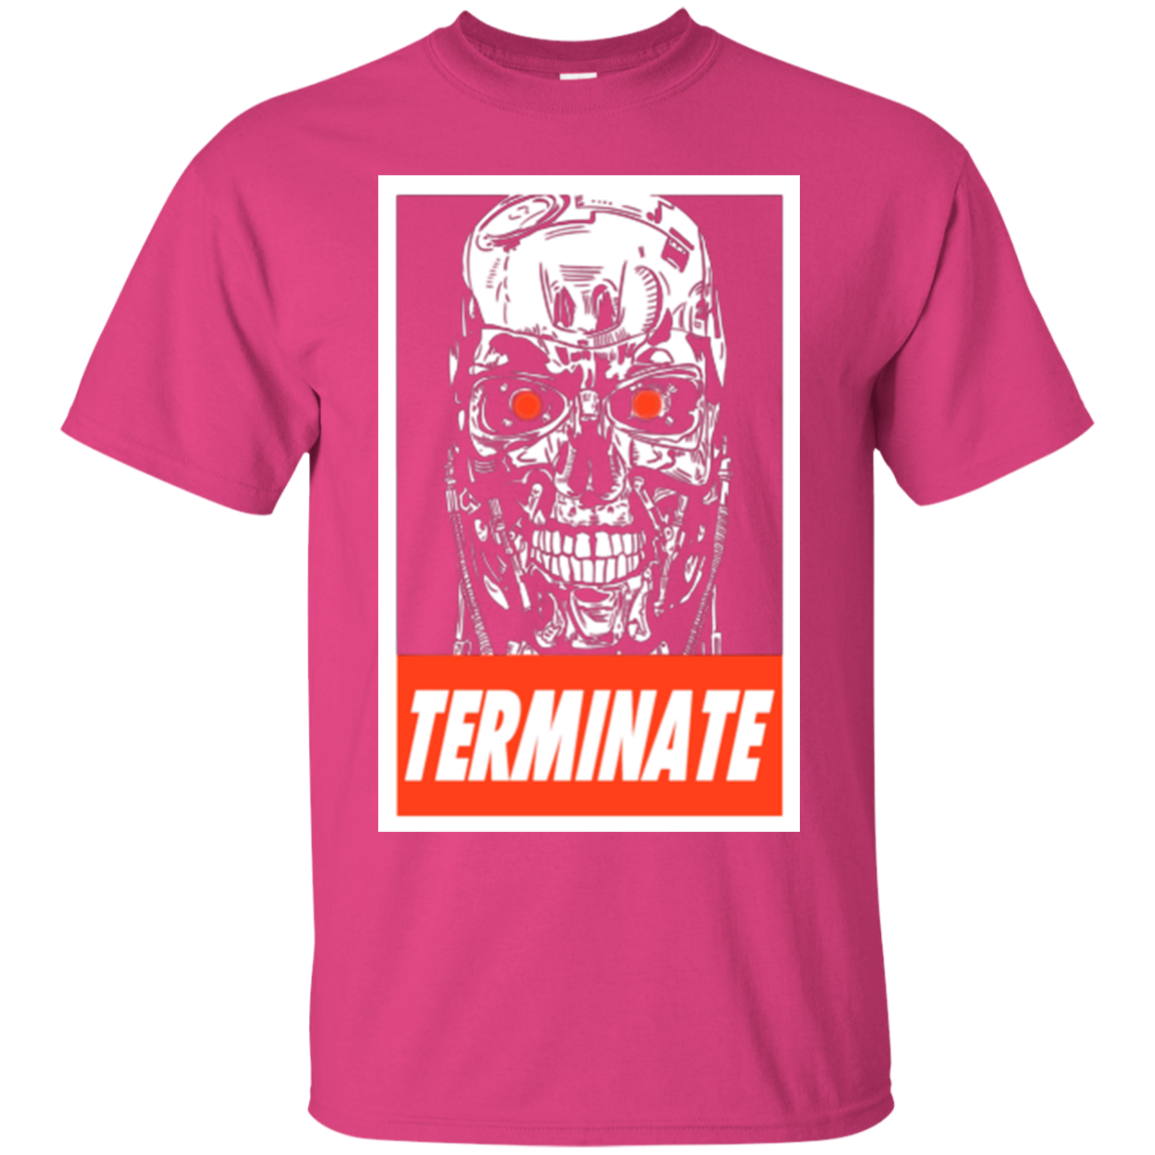 Terminate T-Shirt